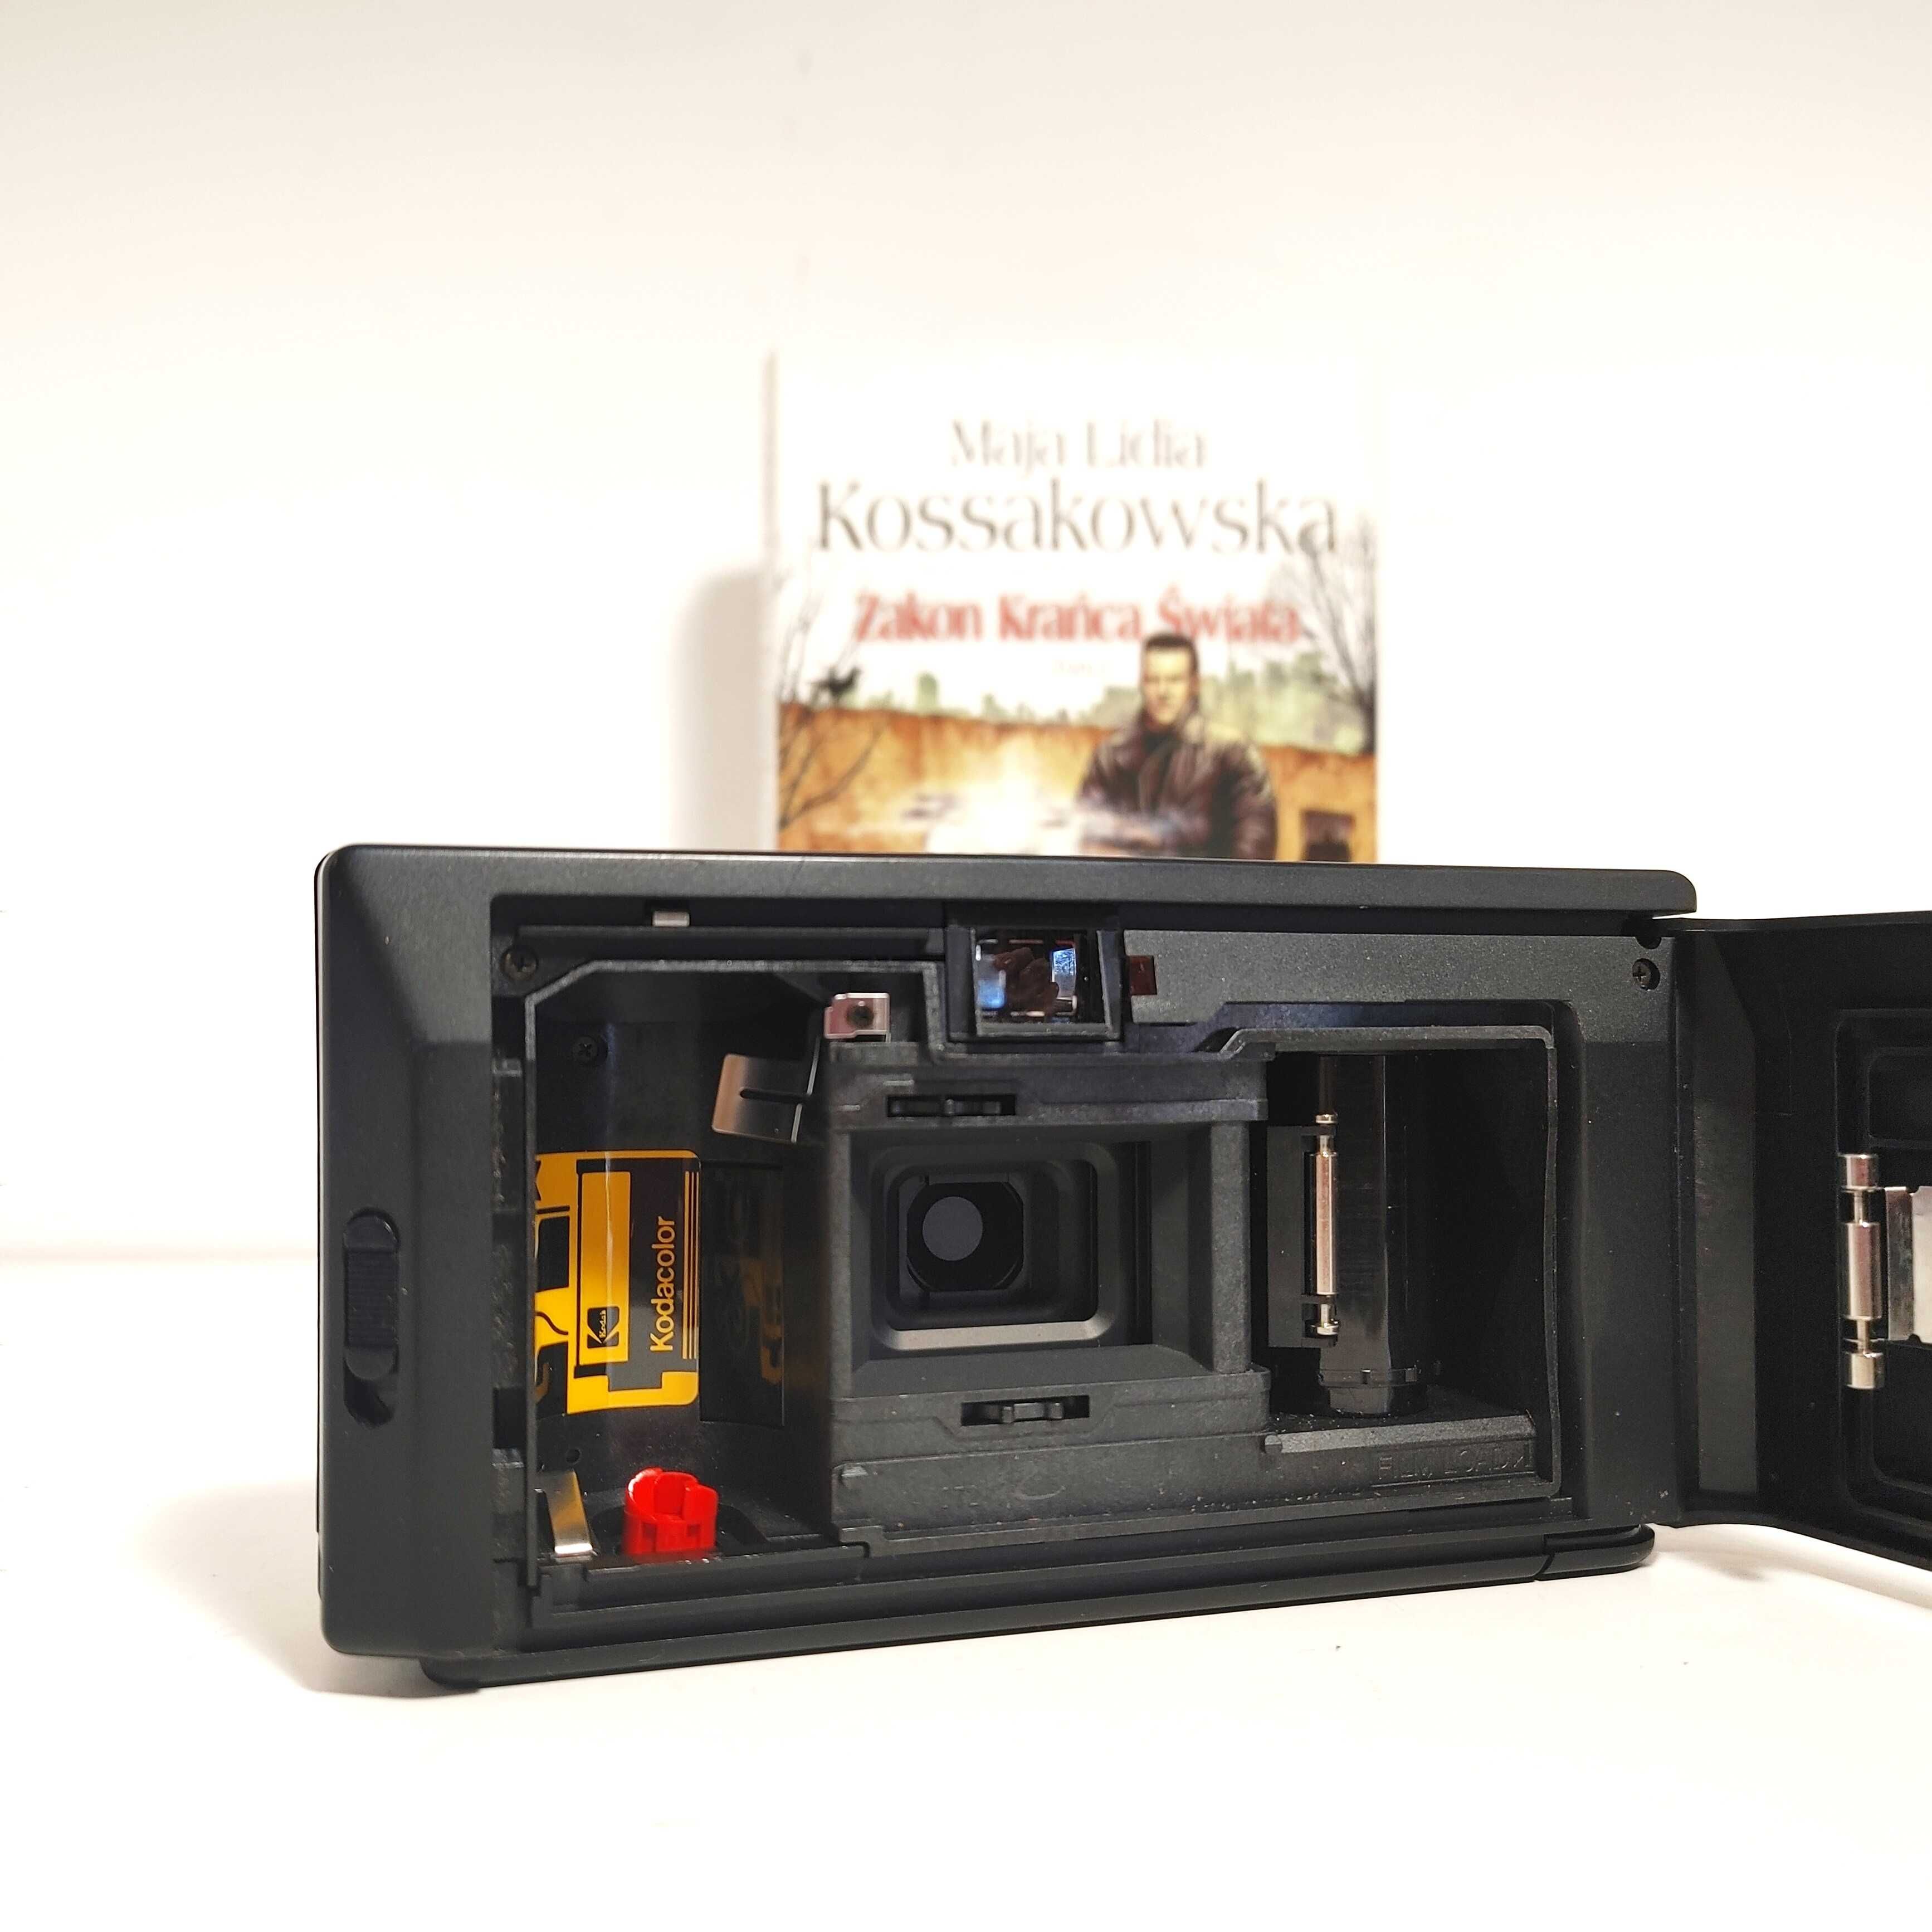 Vintage Kodak S300 MD Kompaktowy aparat analogowy z lat 80 tych XX w